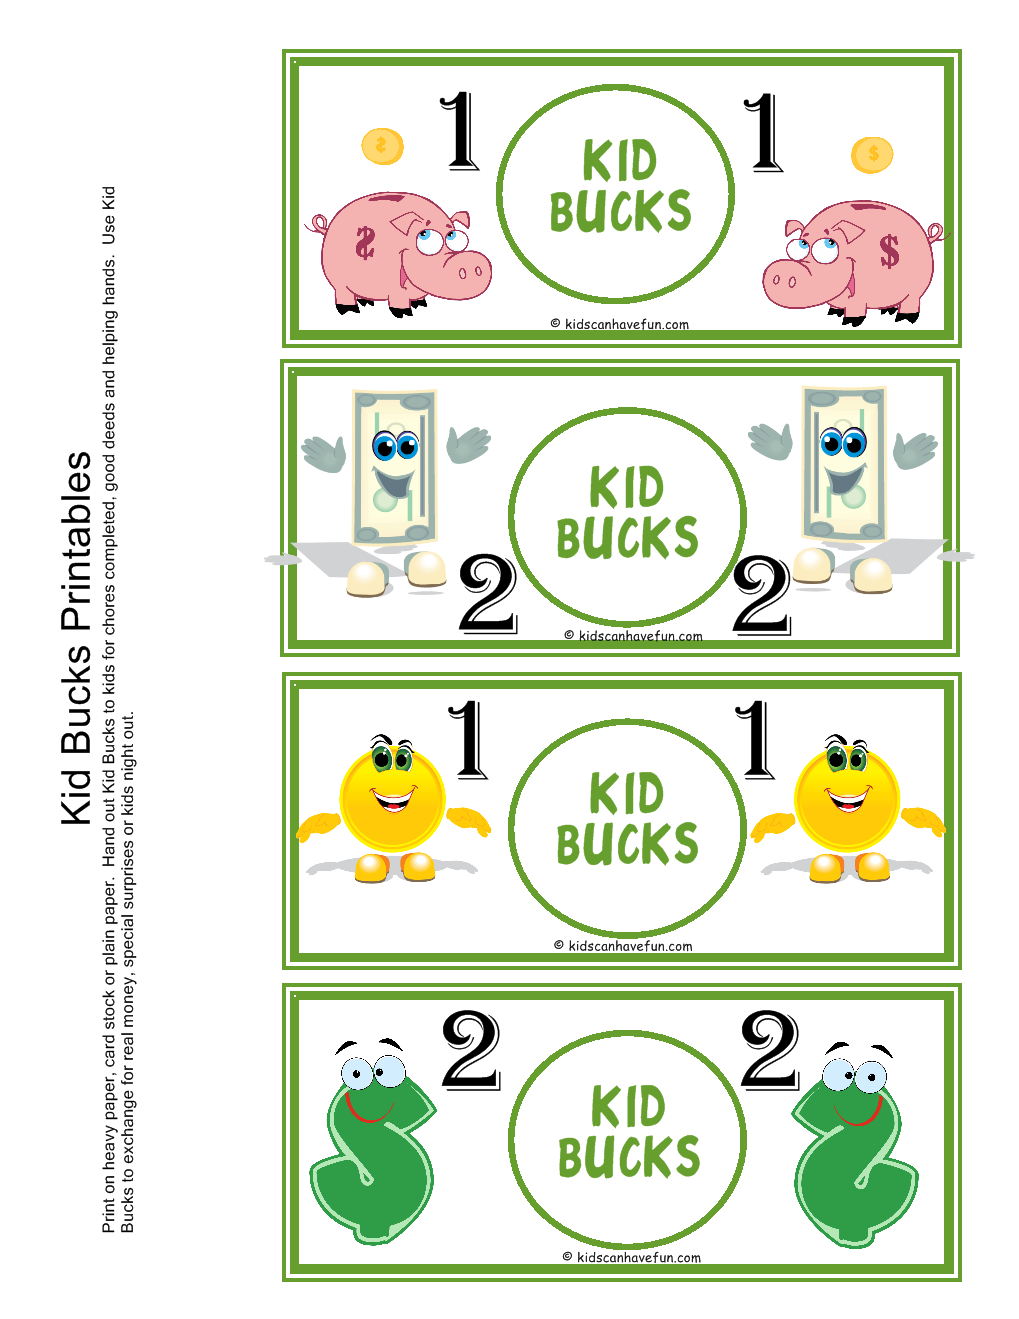 6-best-images-of-printable-reward-bucks-printable-reward-bucks-template-printable-play-money